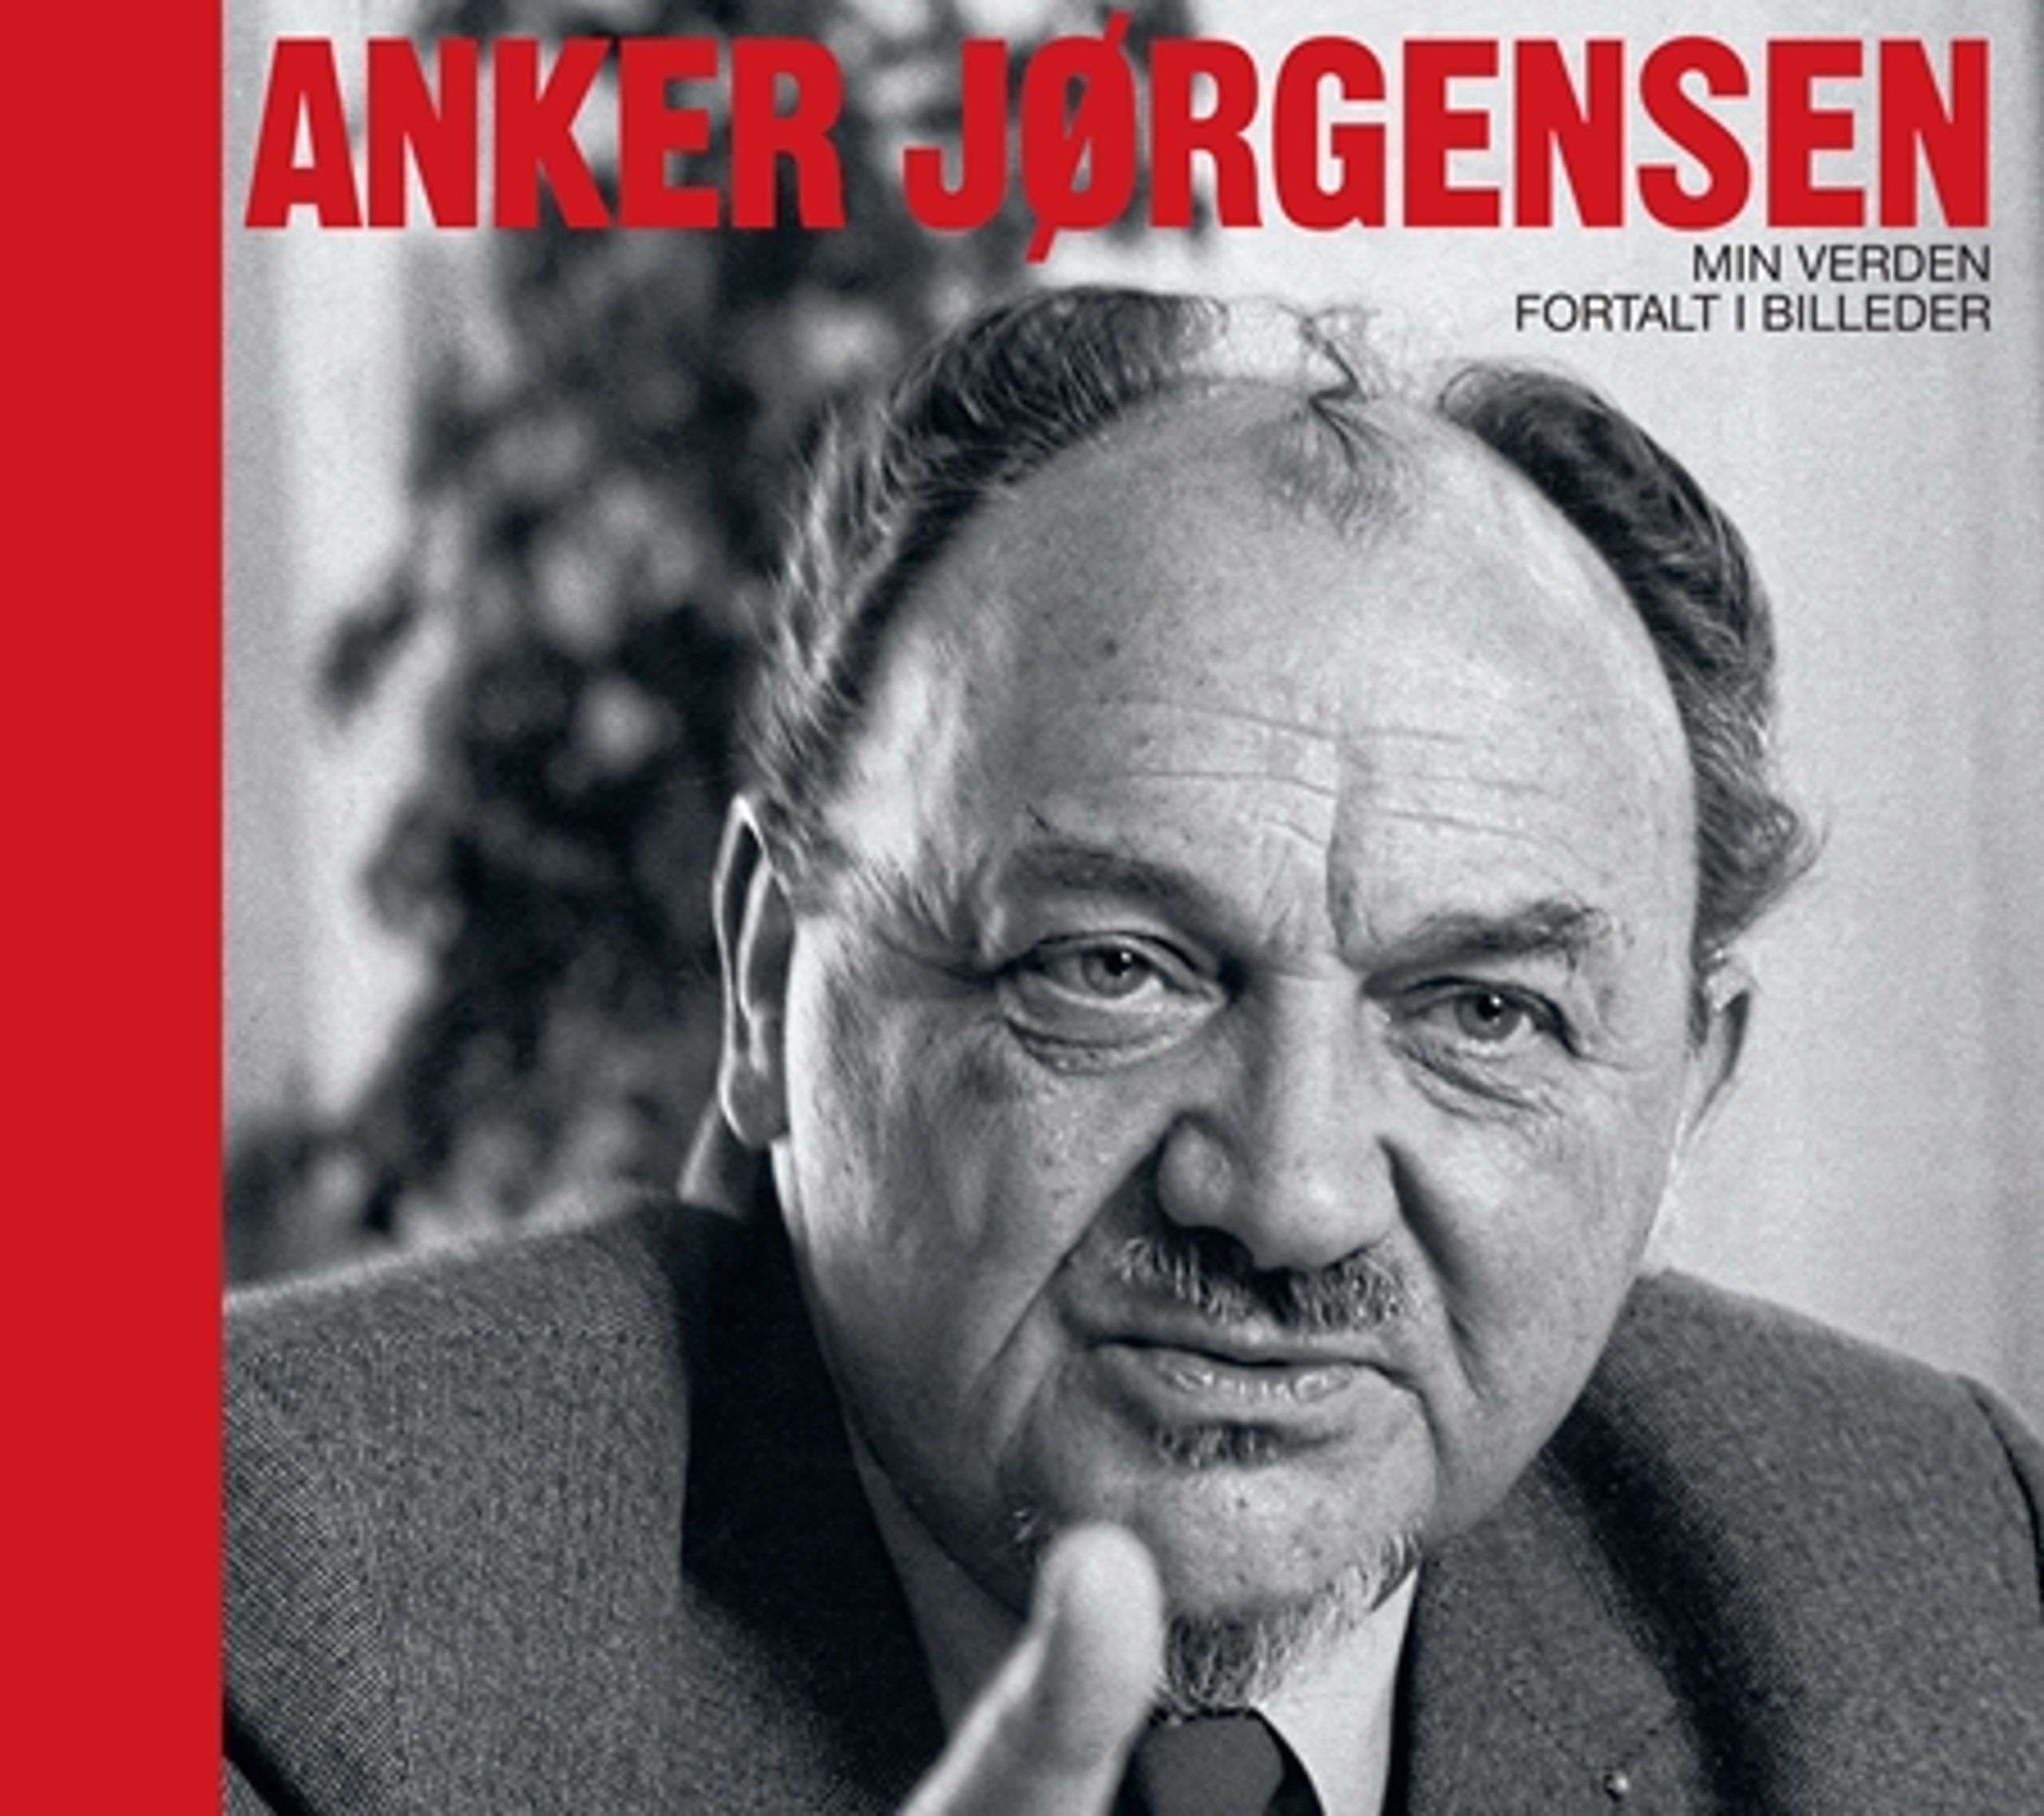 Den nye bog om Anker Jørgensens liv er en forvirrende affære, der ikke løfter sig ud over at være en lang række spredte anekdoter og usammenhængende erindringsglimt.